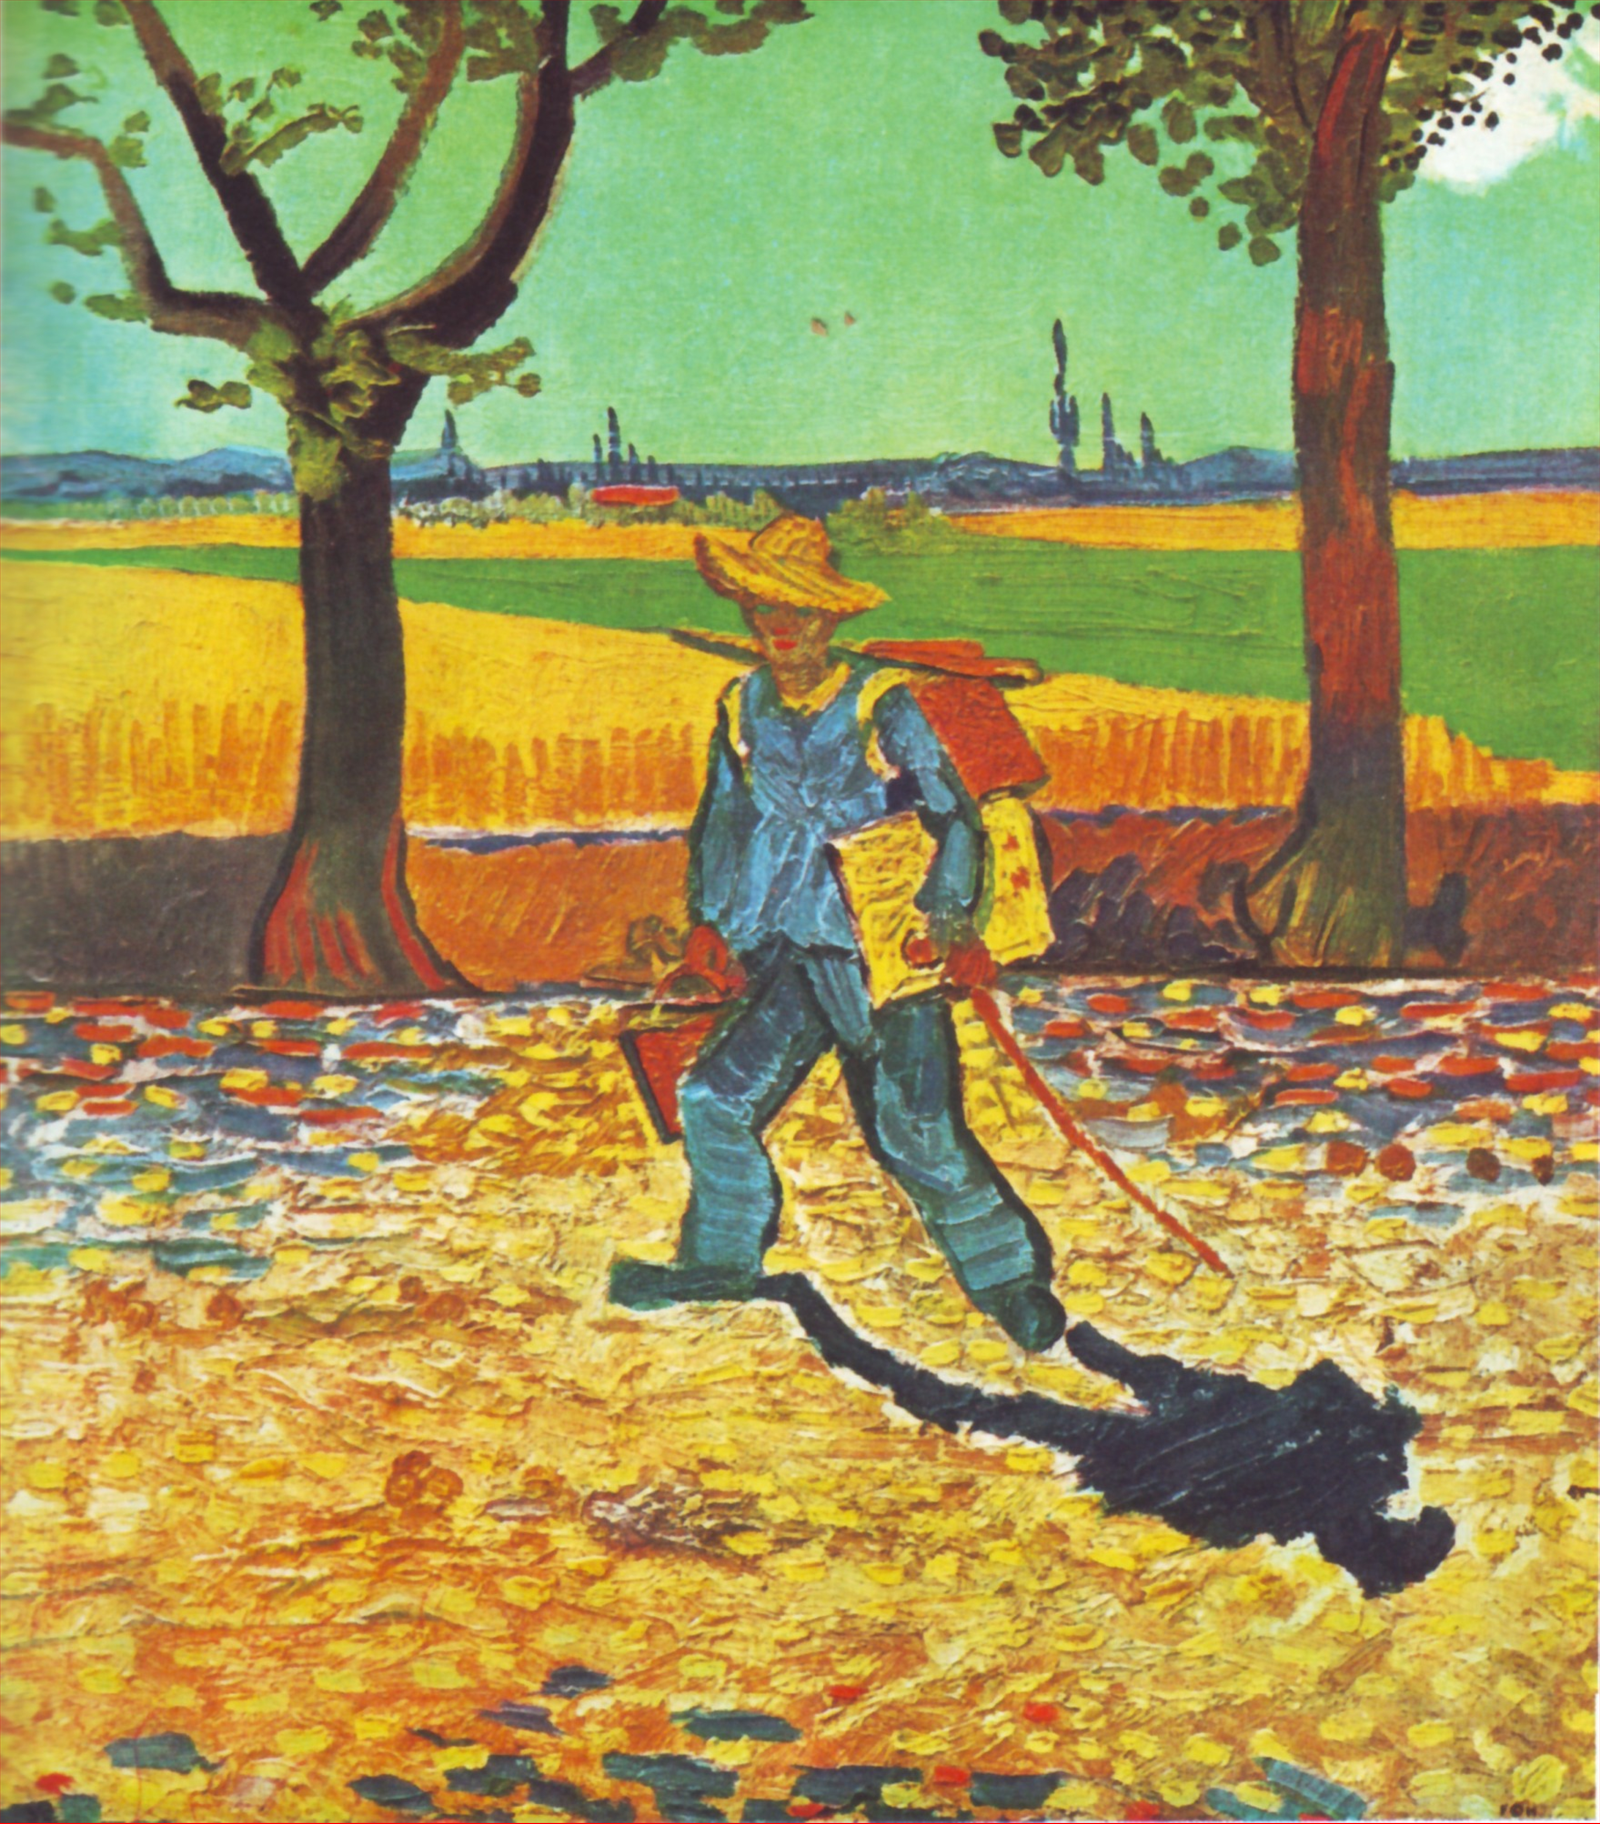 Ein Maler auf dem Weg zur Arbeit by Vincent van Gogh - 1888 - - Zerstört